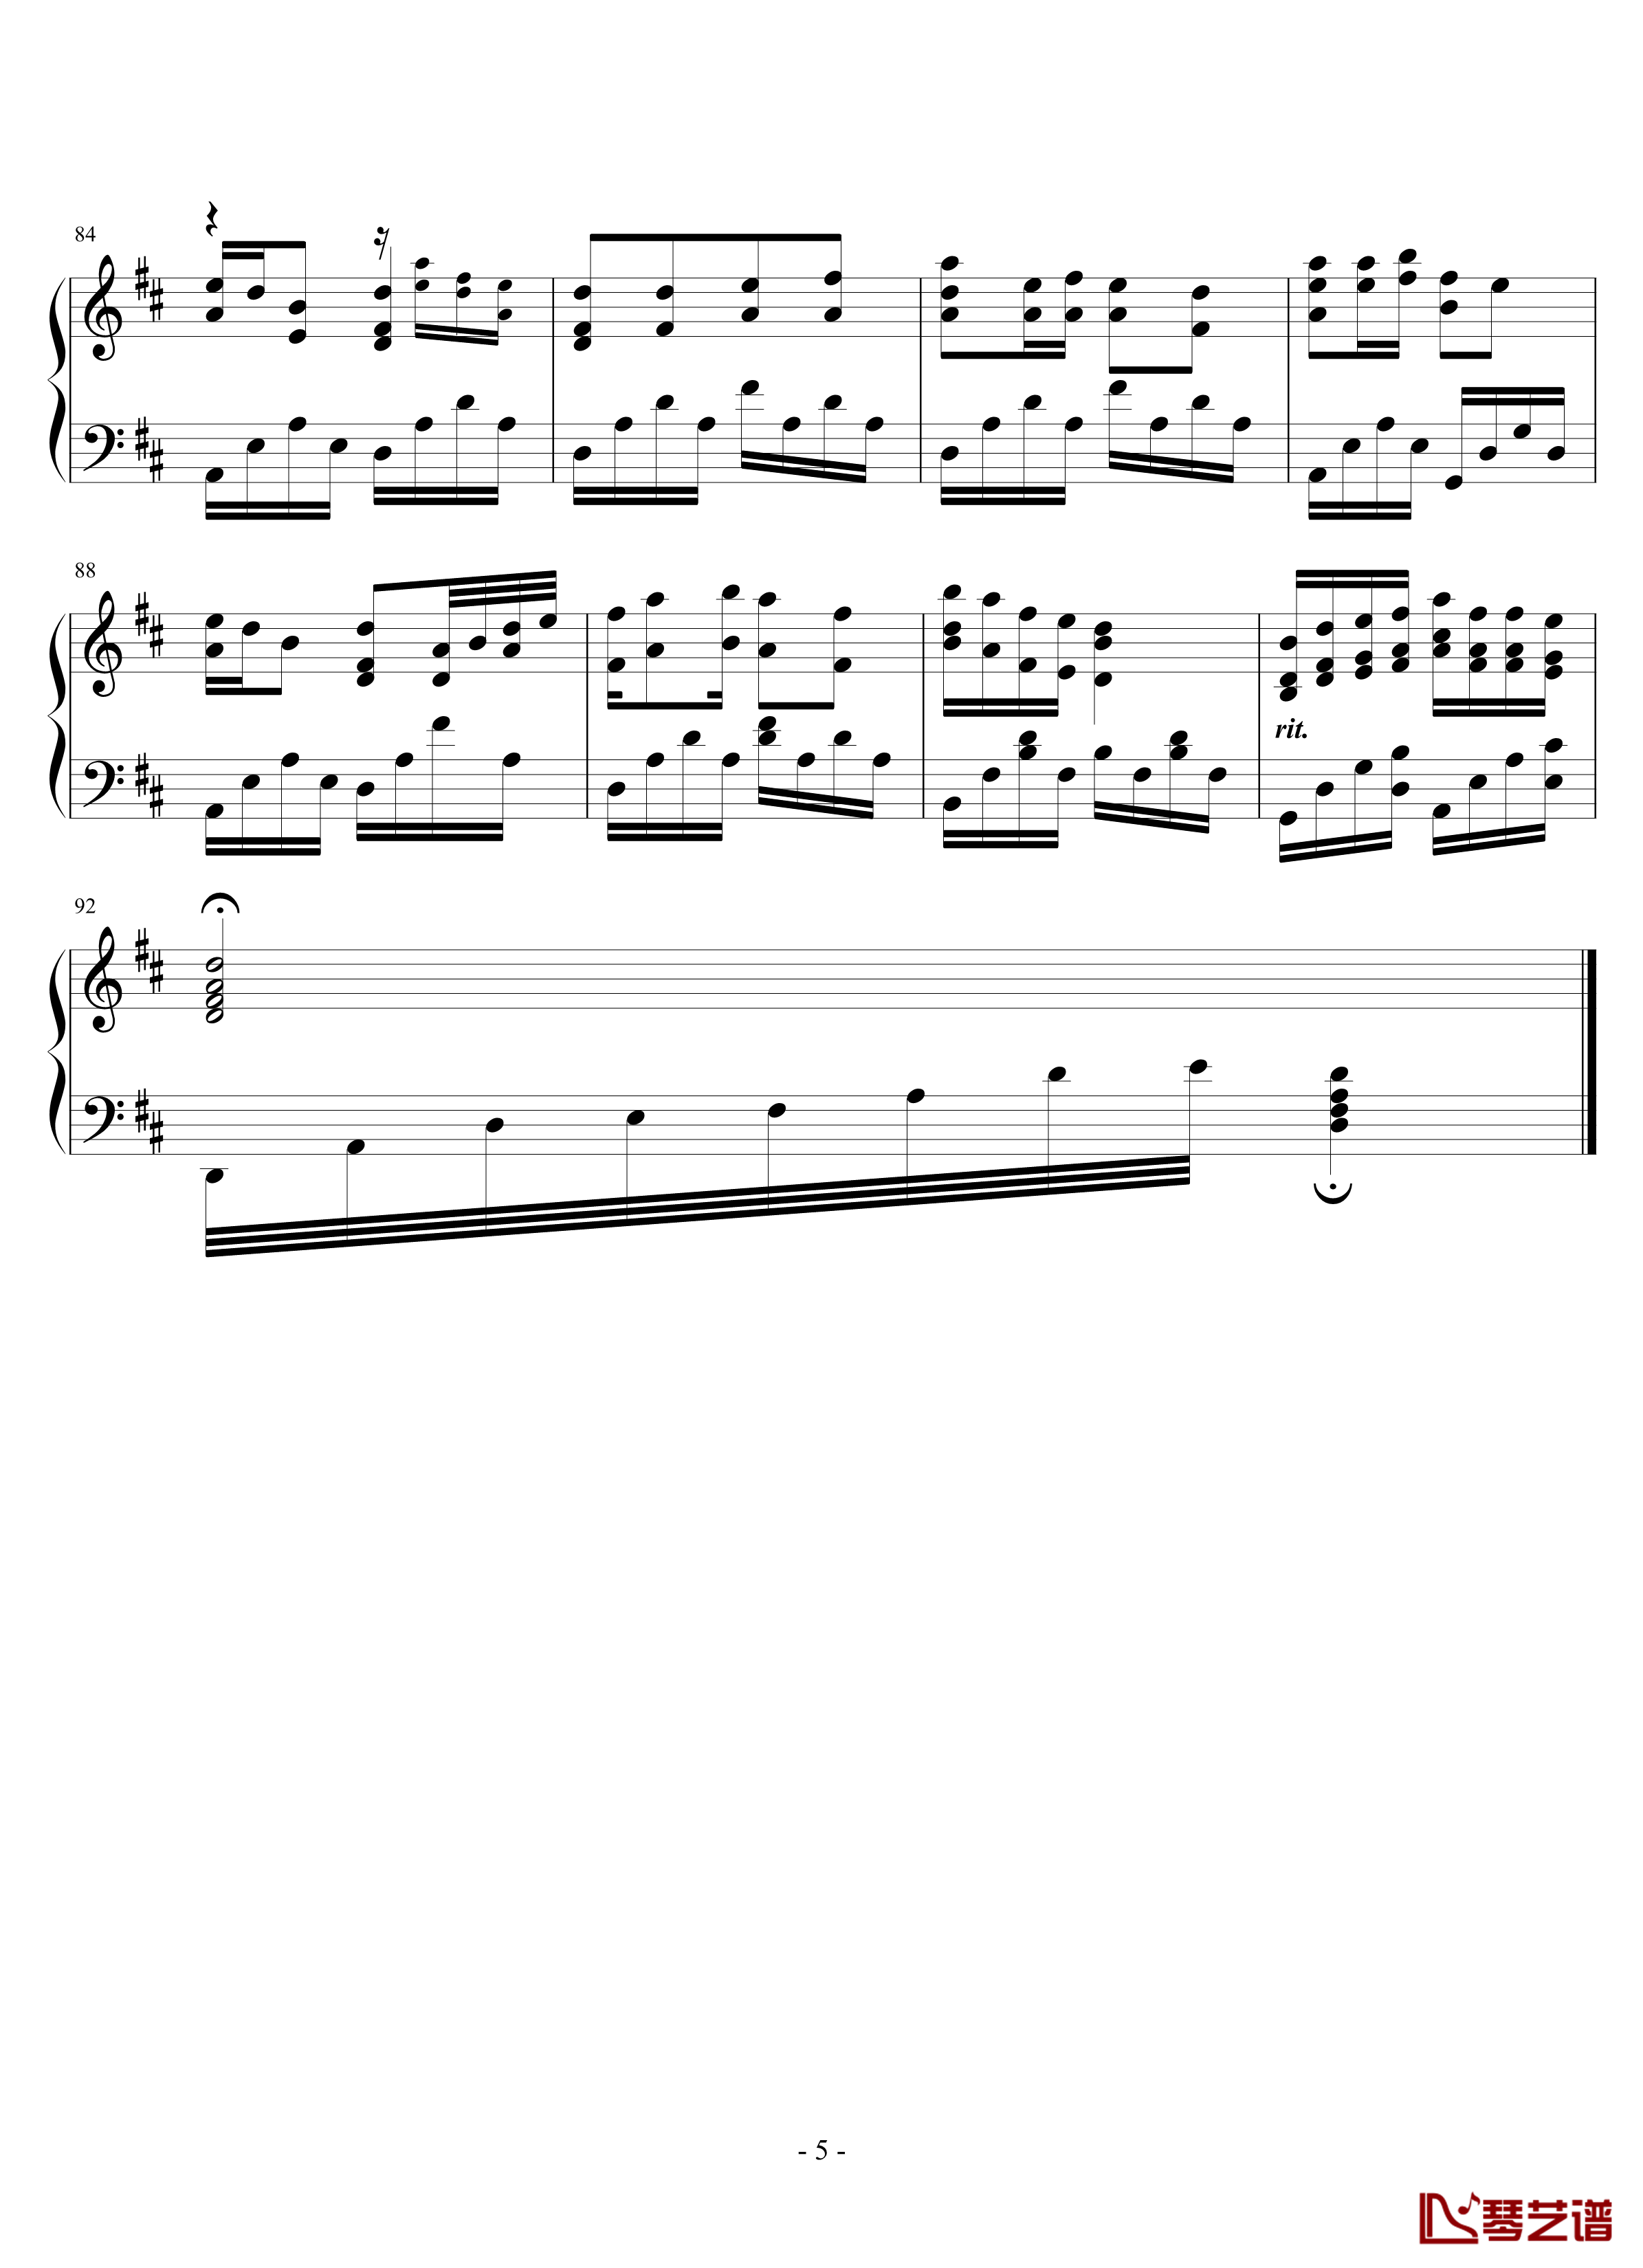 观音心赞钢琴谱-2.0完美版-佛教音乐5